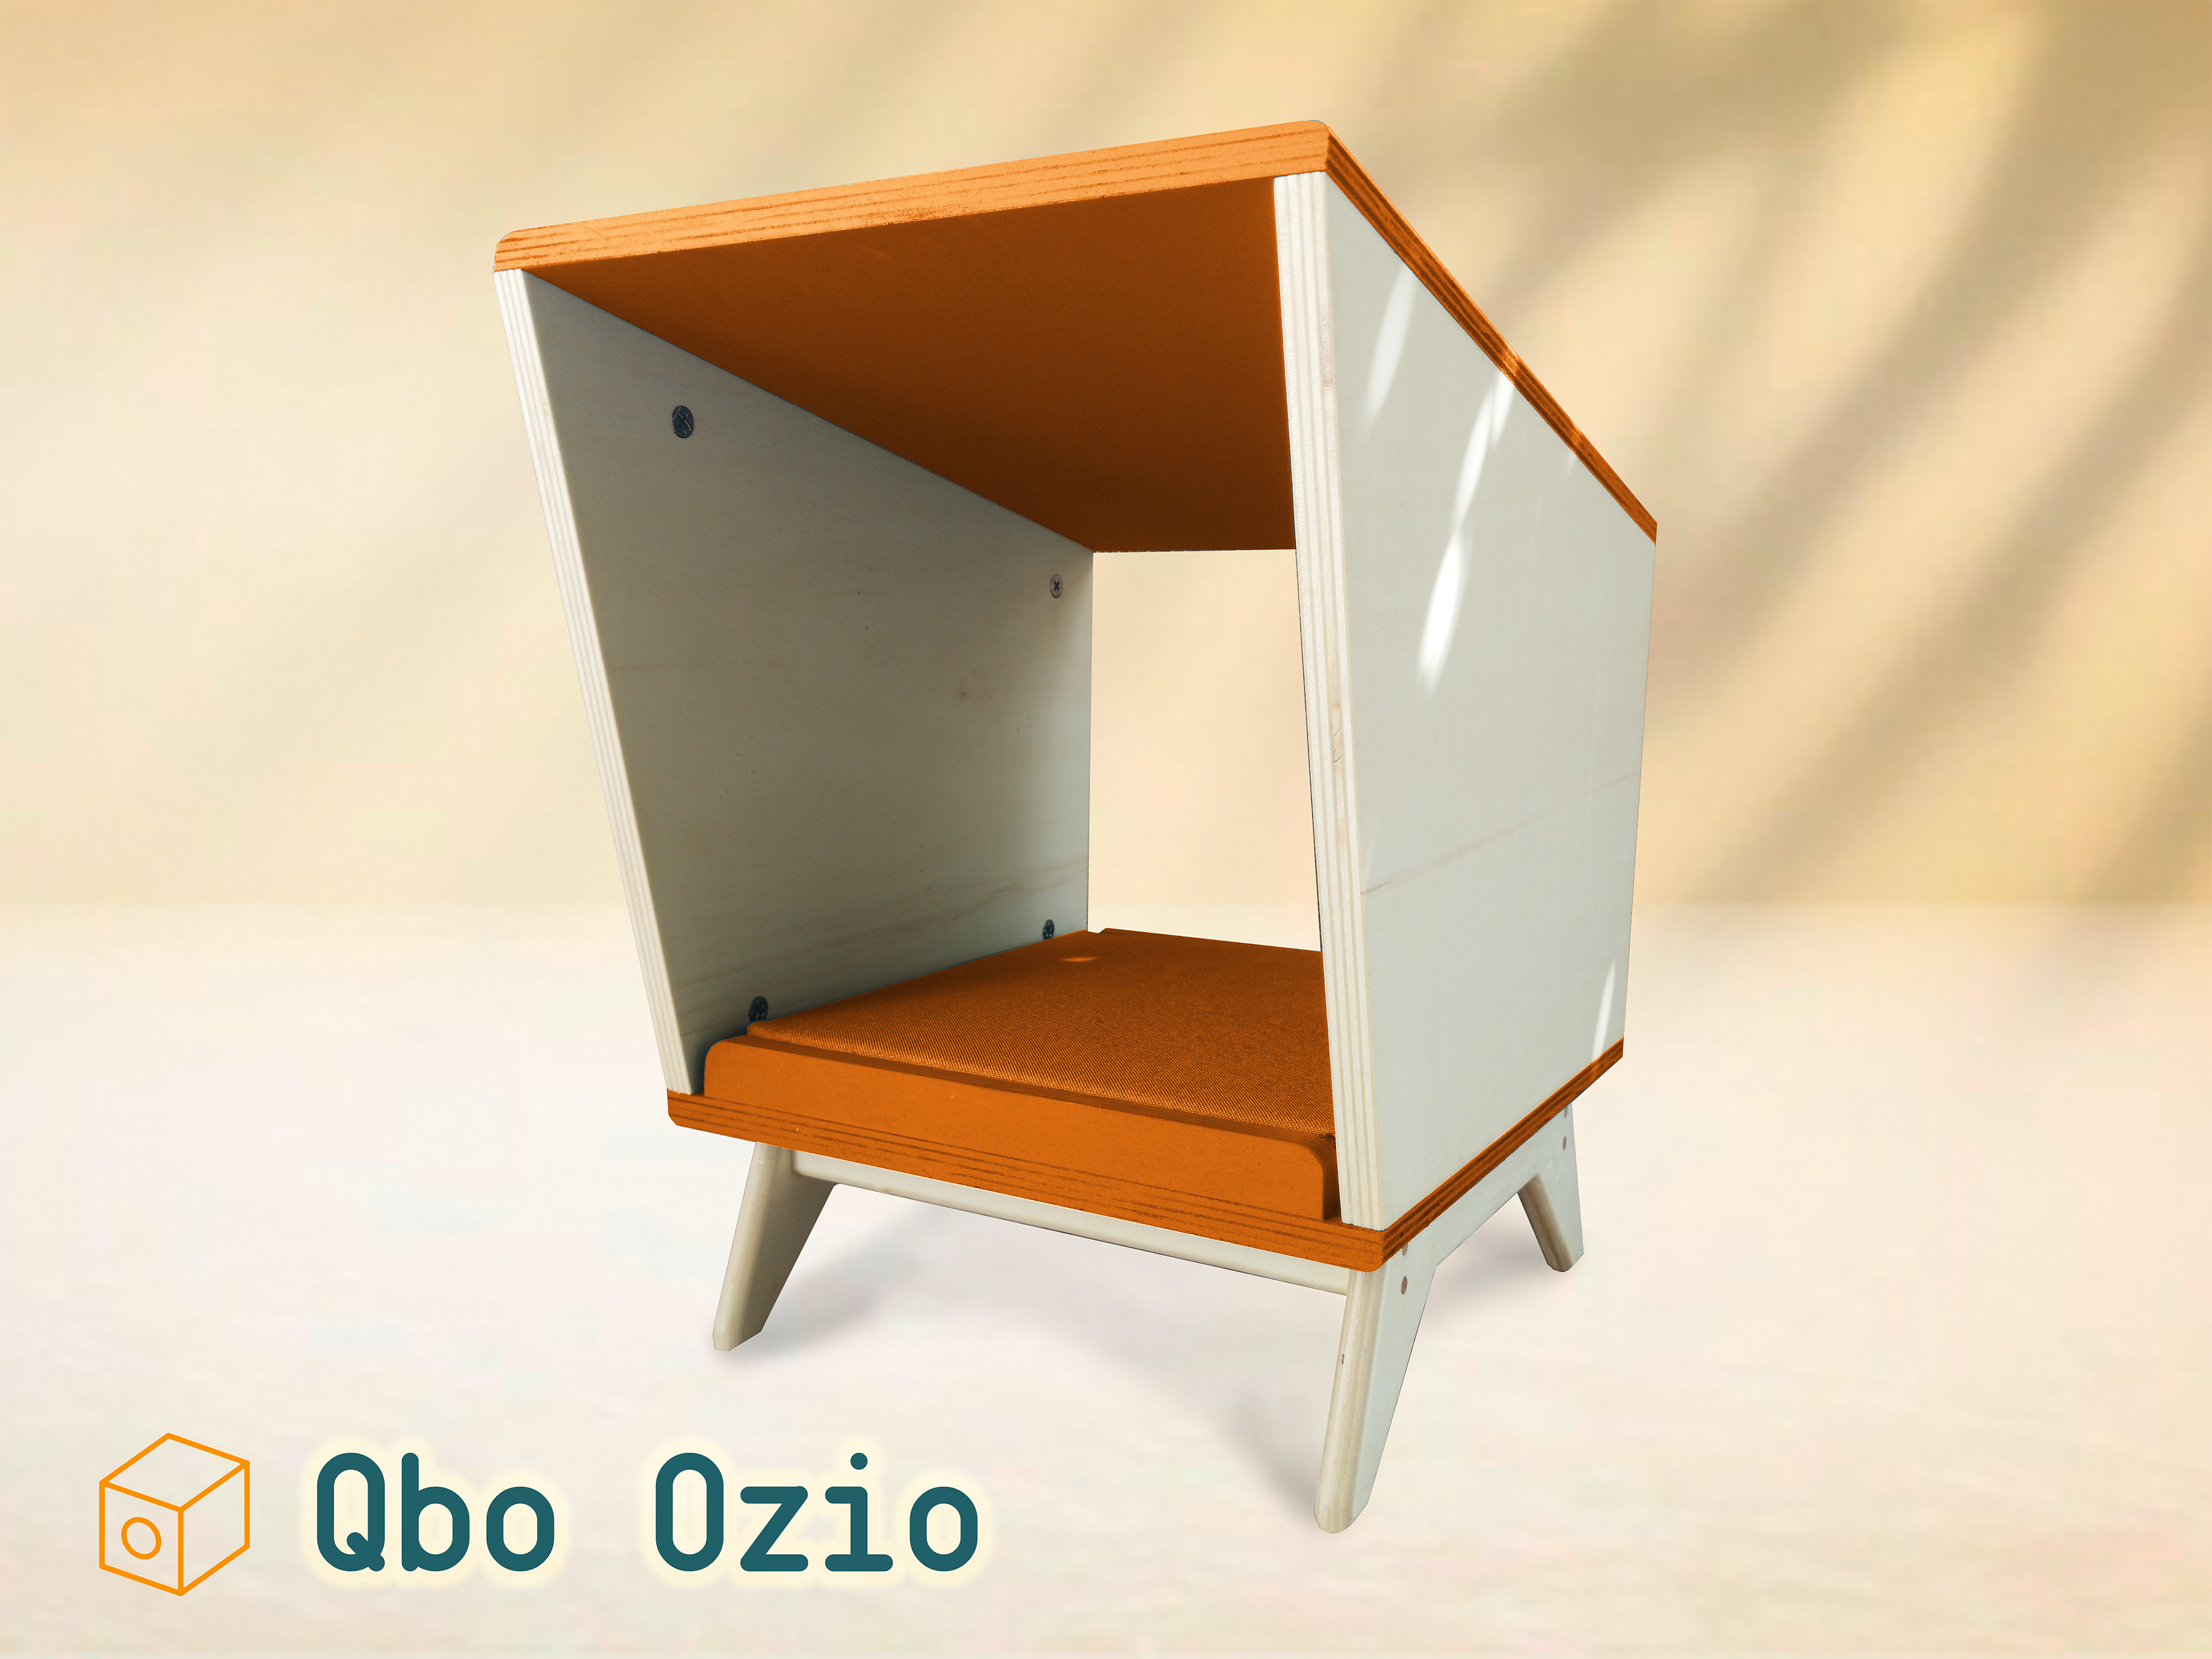 Qbo Ozio - Tropical Orange - Qbo Pets